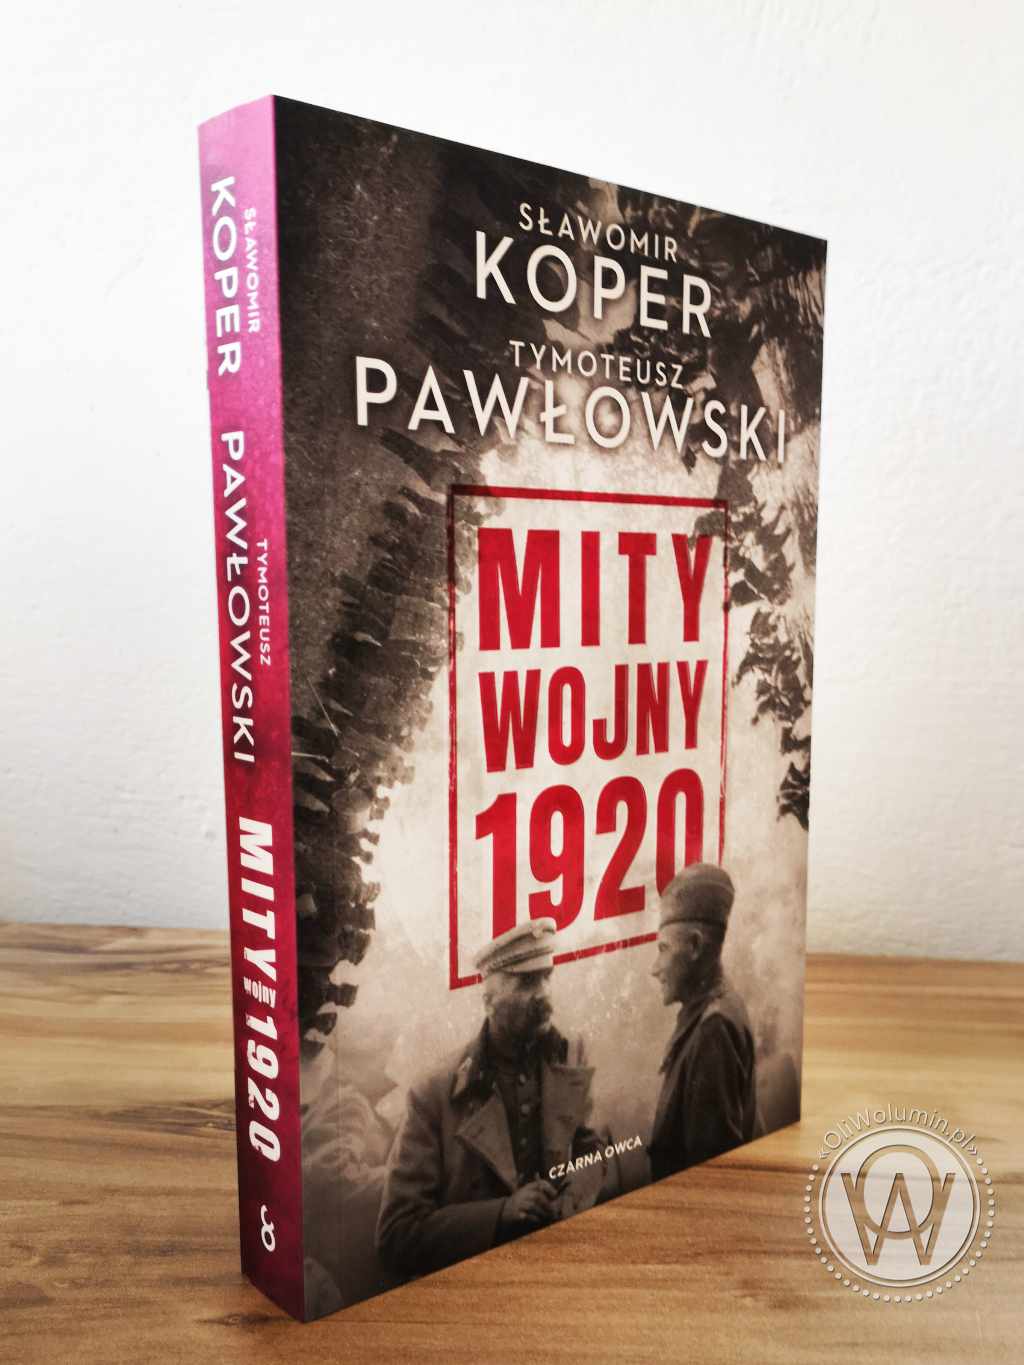 Mity Wojny 1920 - Sławomir Koper, Tymoteusz Pawłowski